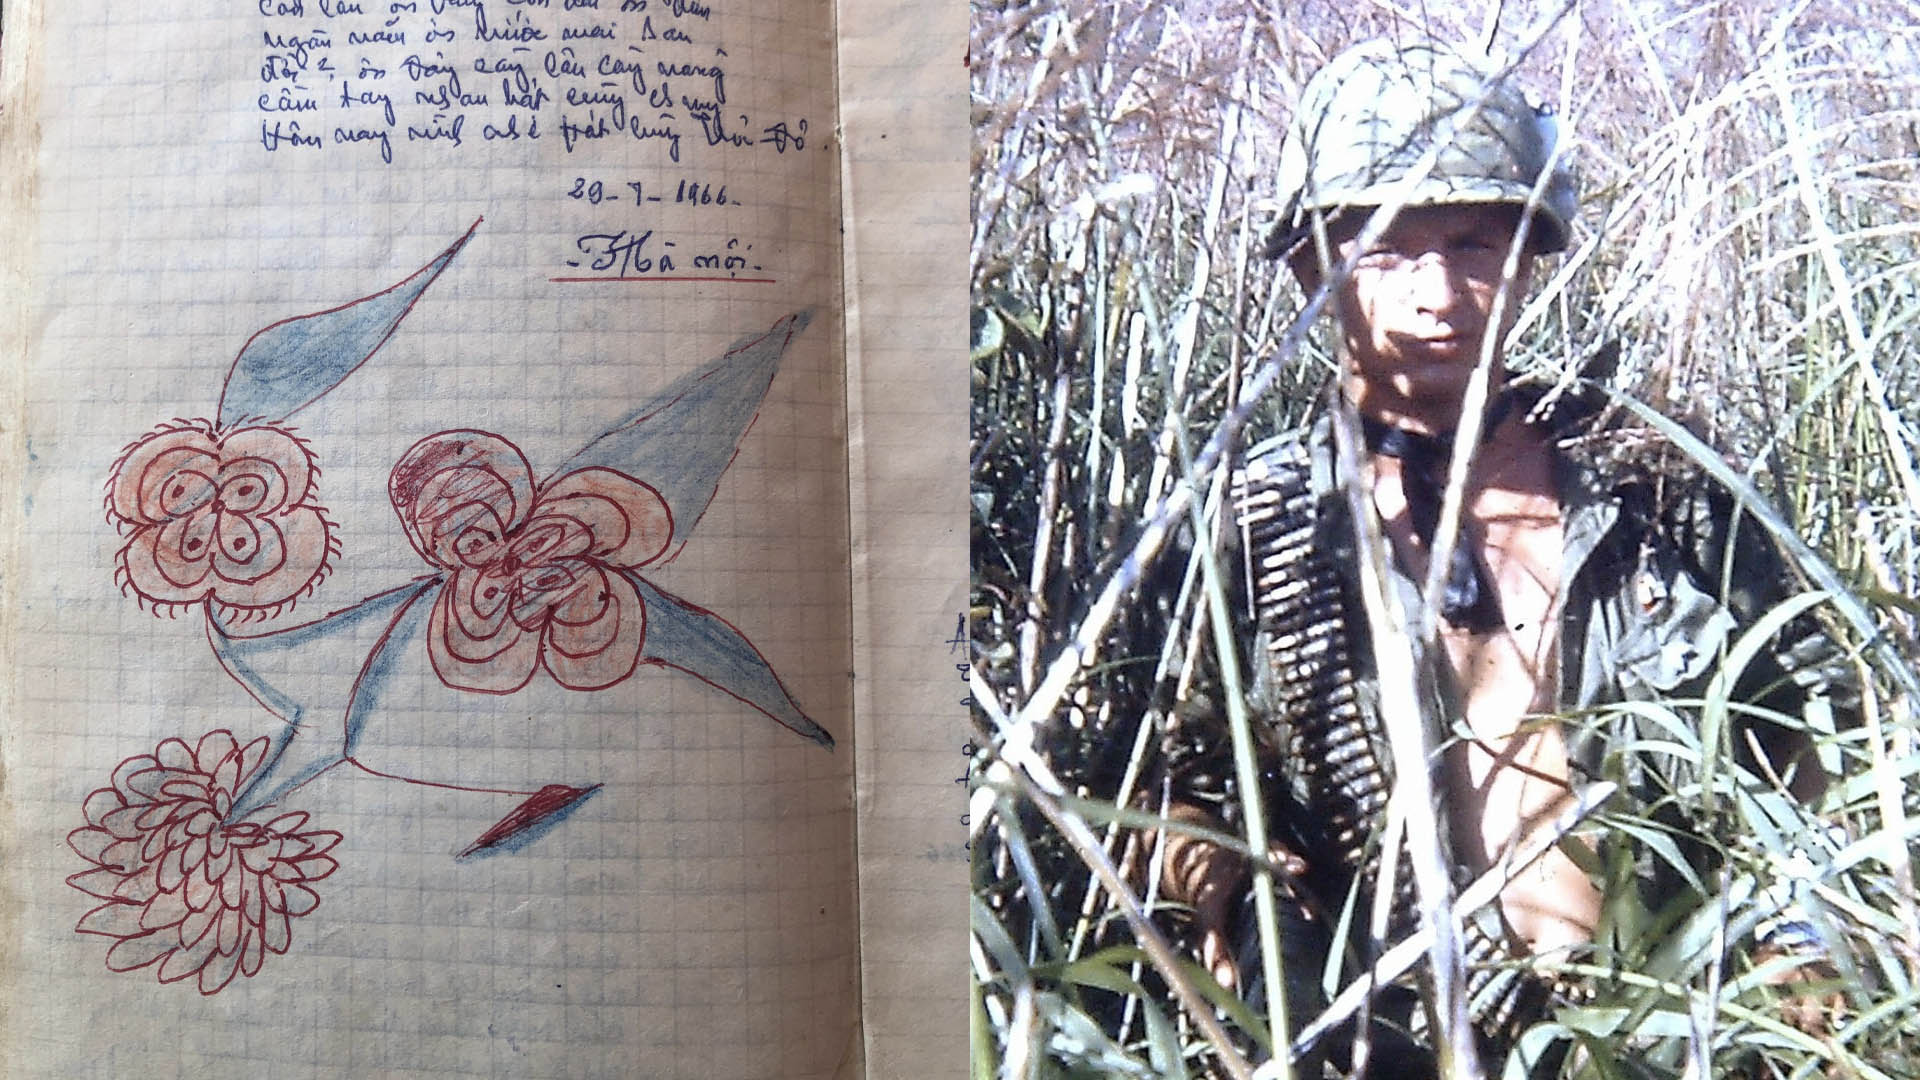 El diario y el soldado que lo halló (fotos: Peter Mathews)